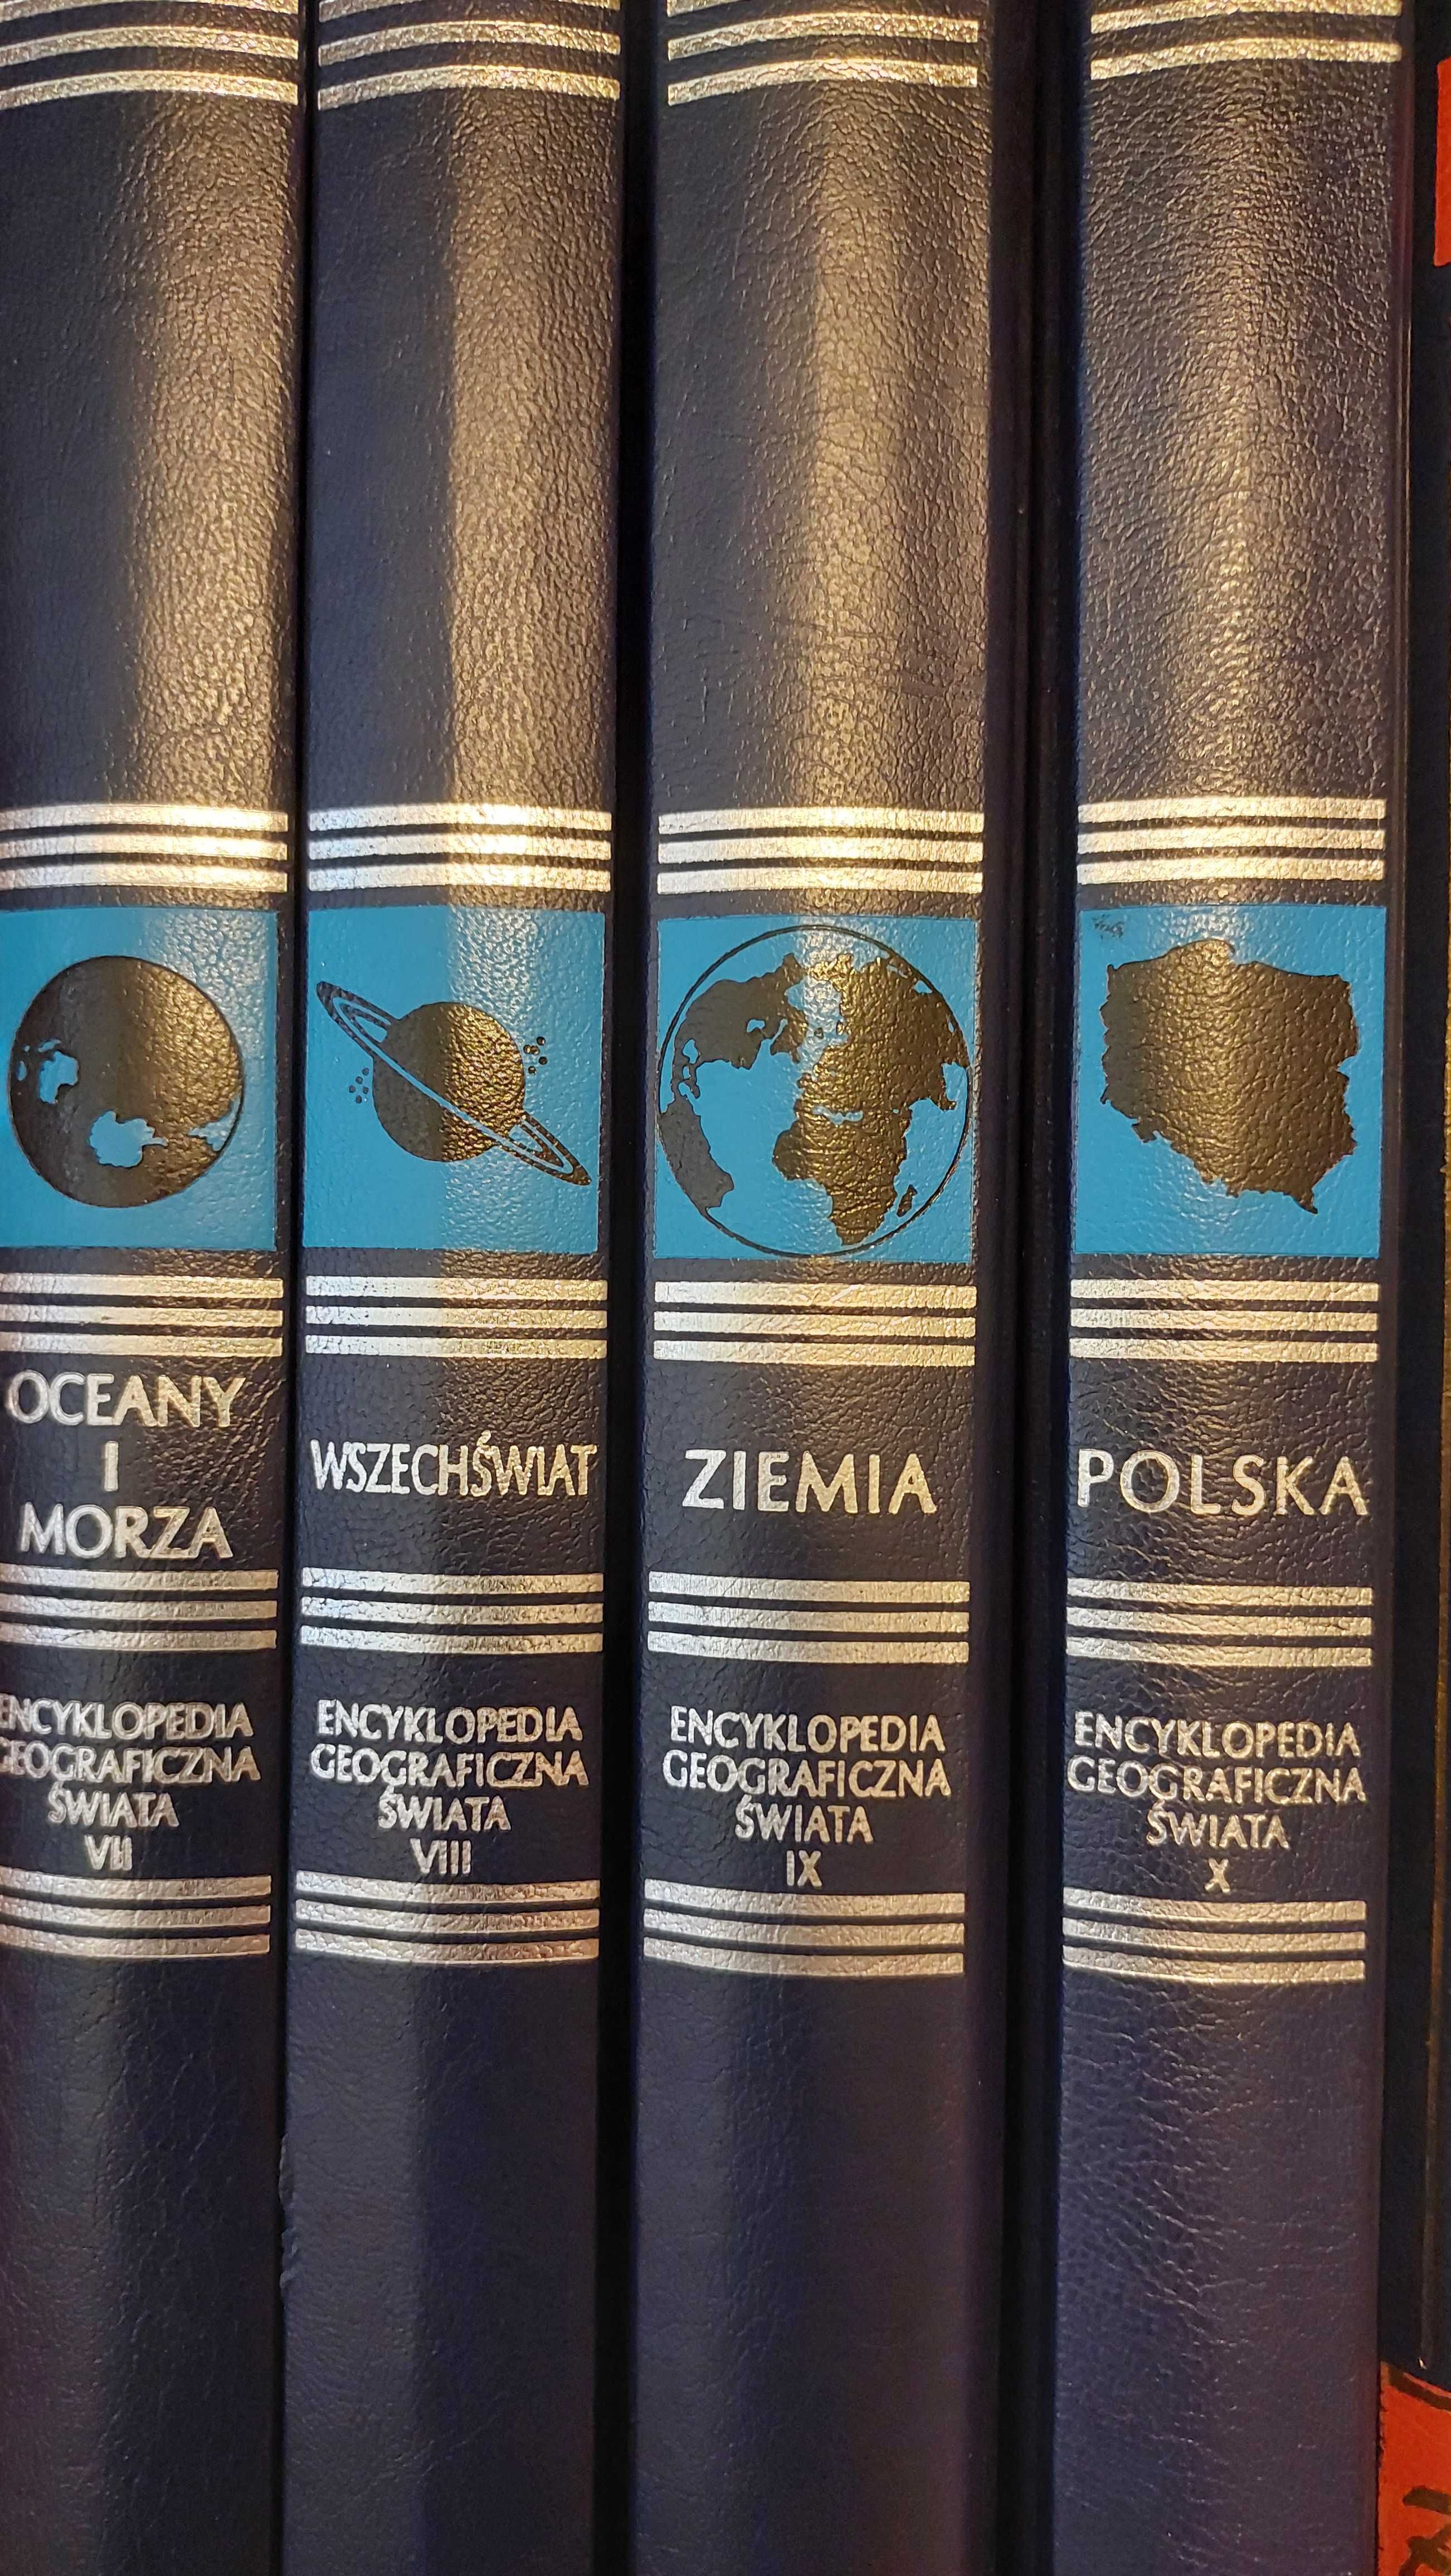 Encyklopedia geograficzna świata 10 tomów